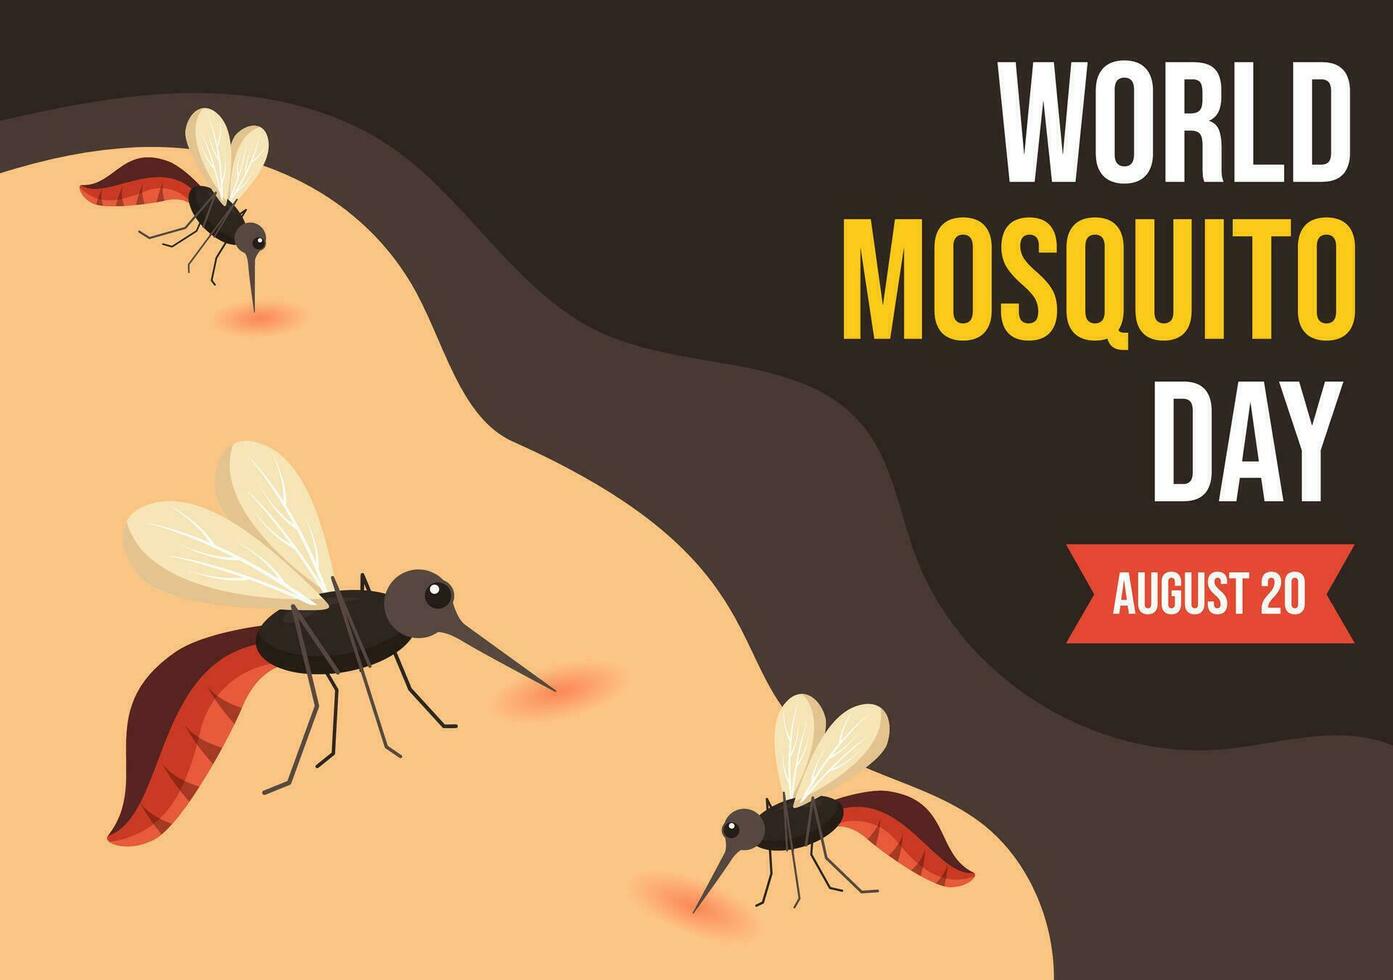 mundo mosquito dia vetor ilustração em 20 agosto com midge pode causa dengue febre e malária dentro plano desenho animado mão desenhado fundo modelos